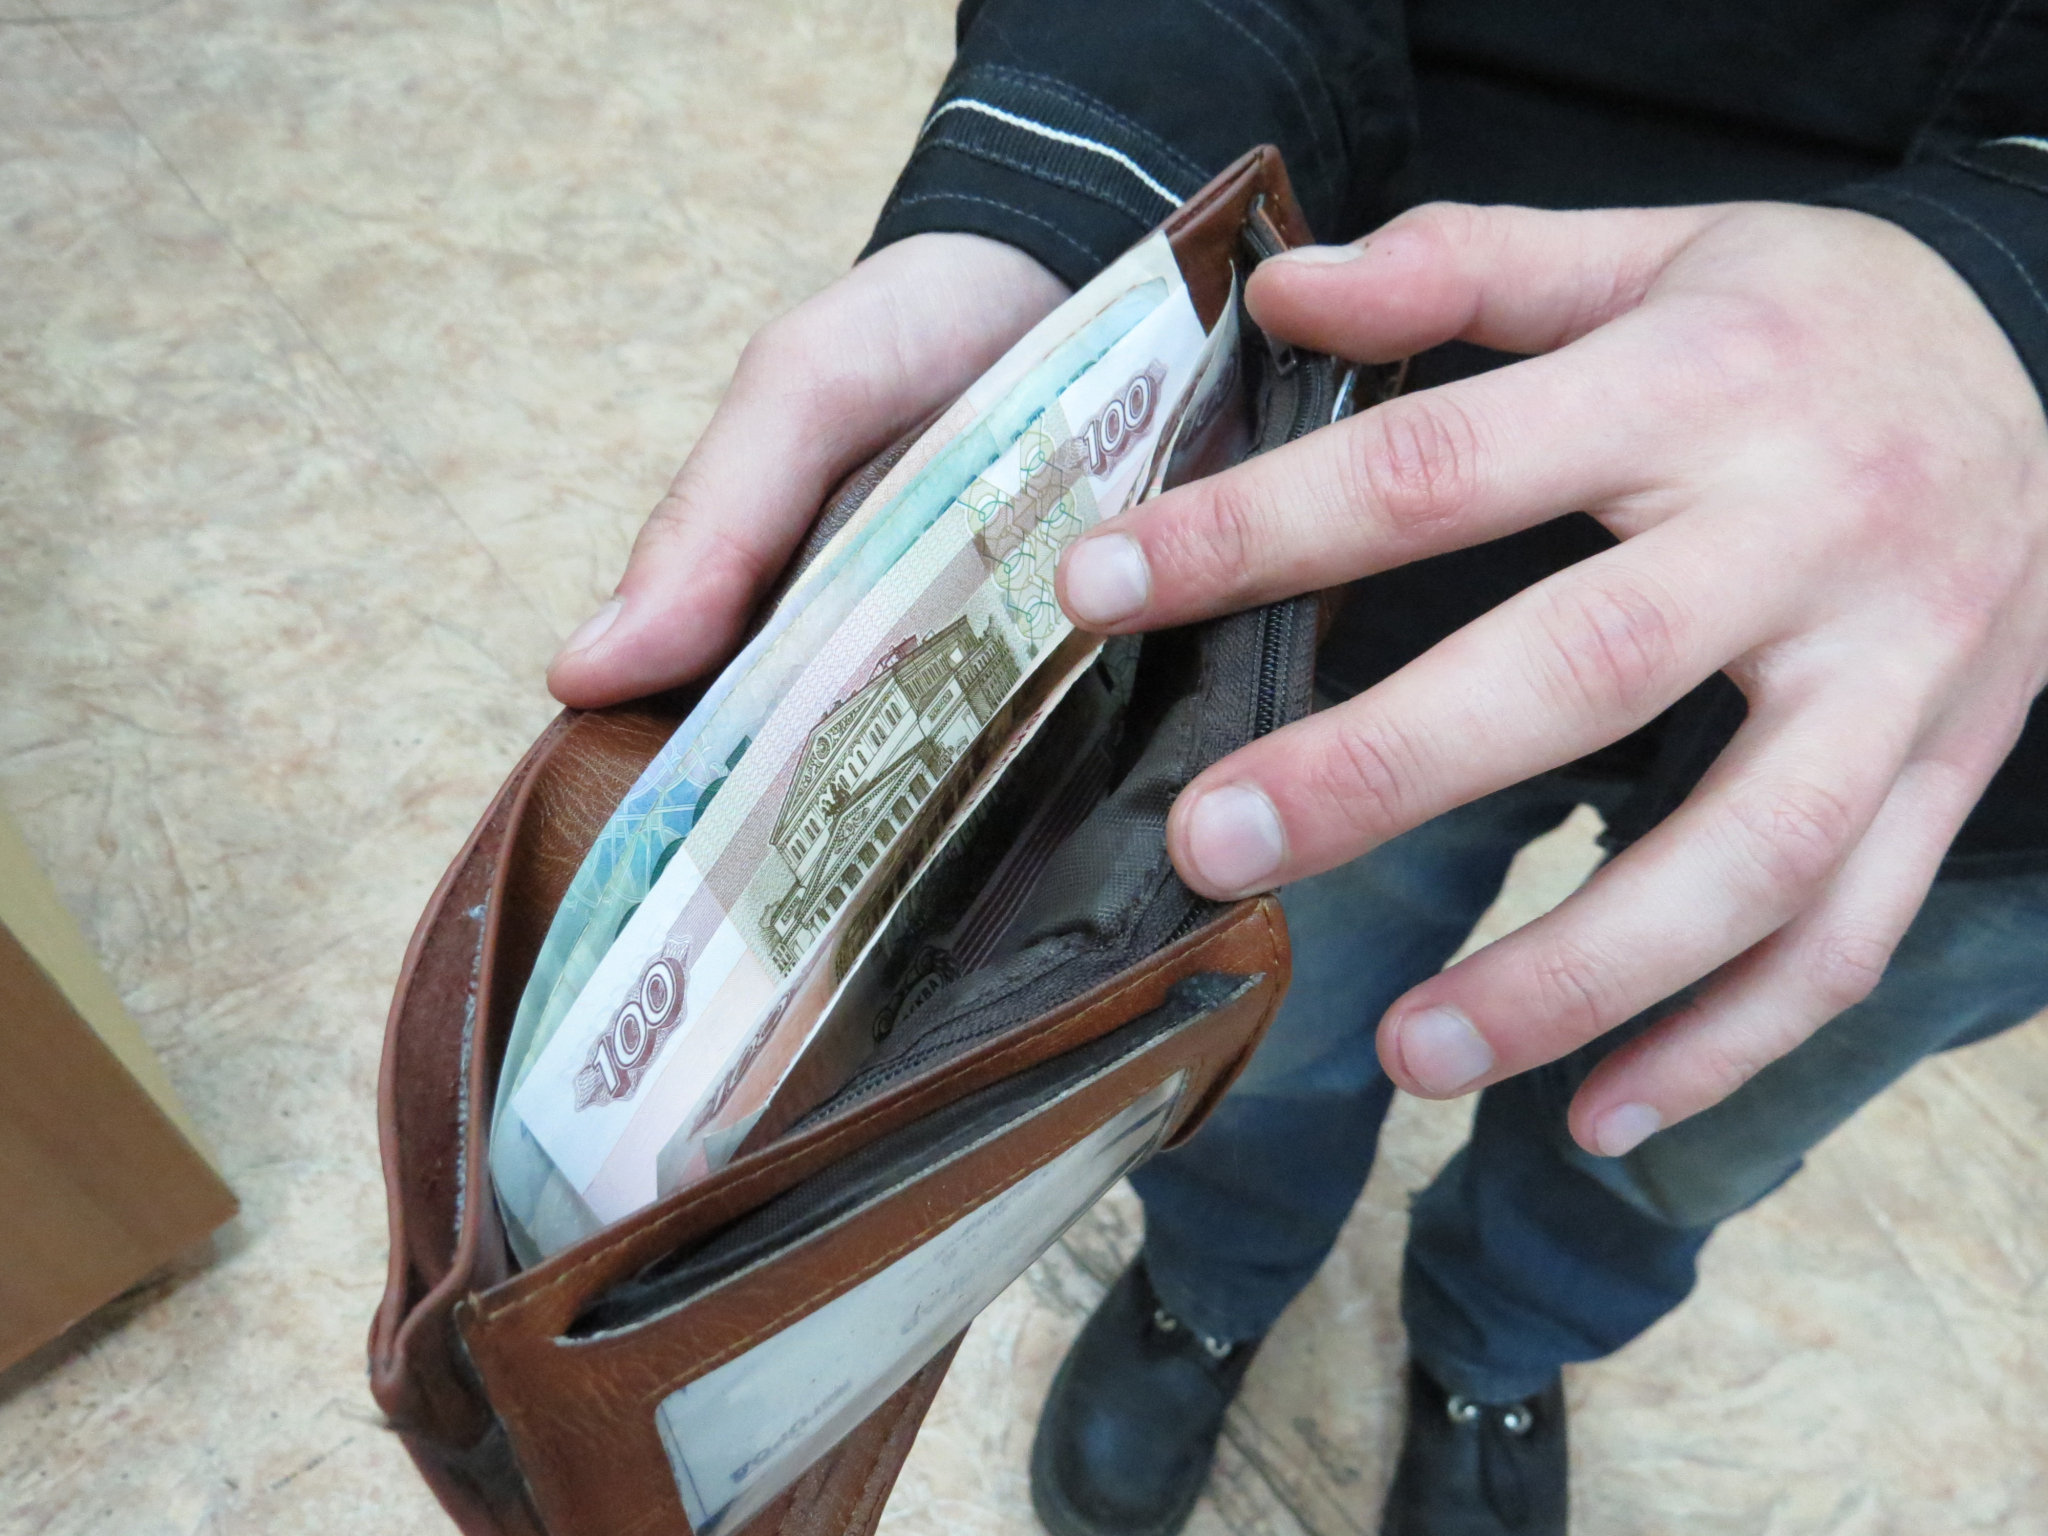 Житель Саранска отдал мошеннику деньги, надеясь вернуть потерянную сумку